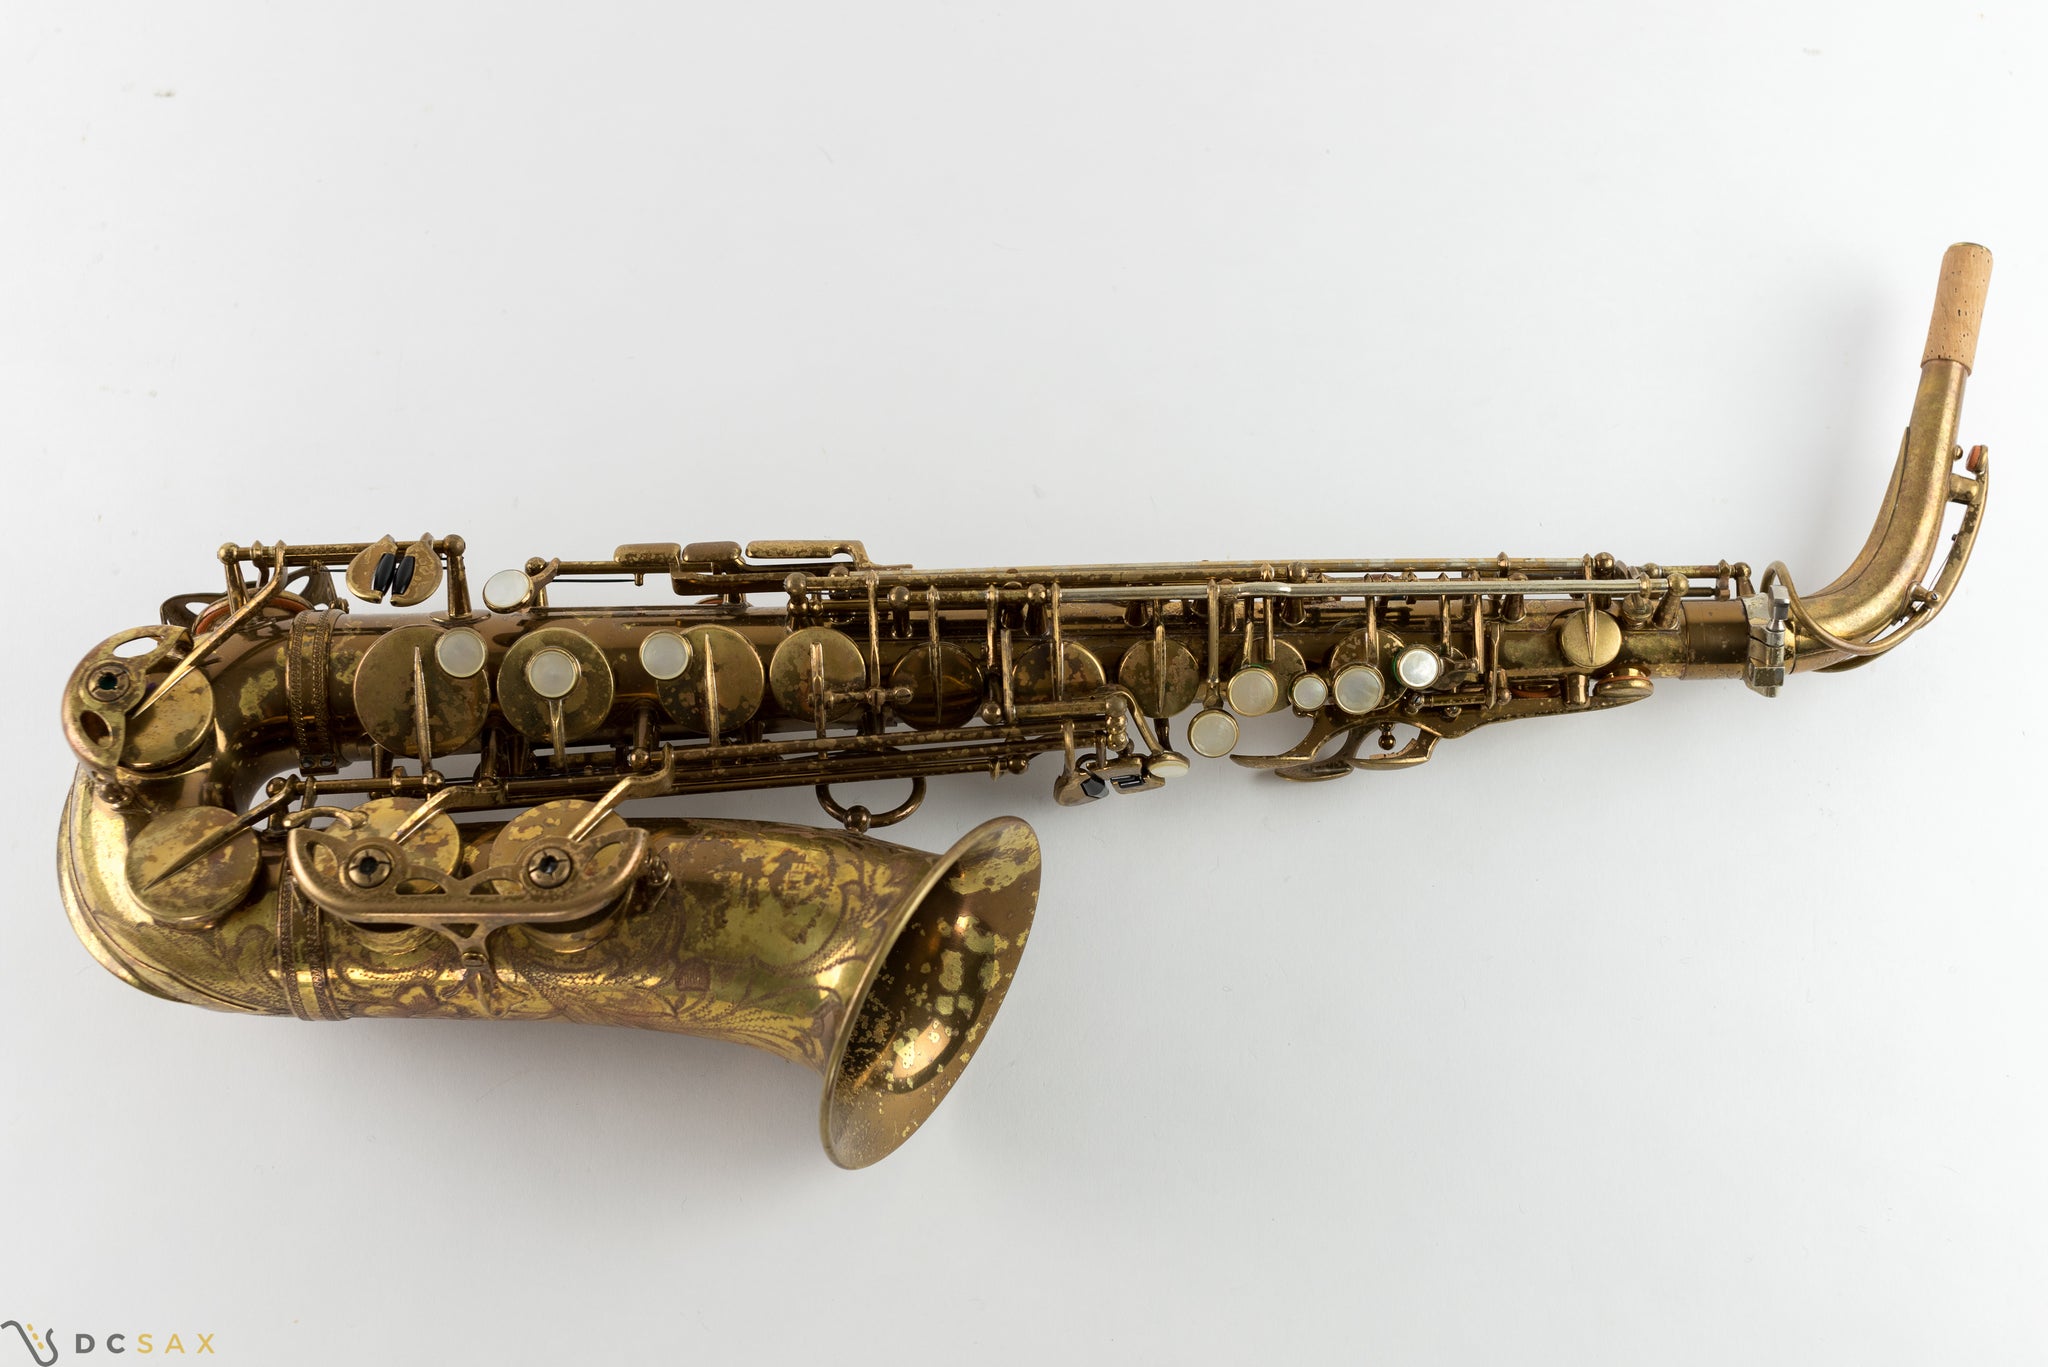 48,xxx Selmer Super Balanced Action Alto Saxophone, Original Lacquer, Overhaul, Video